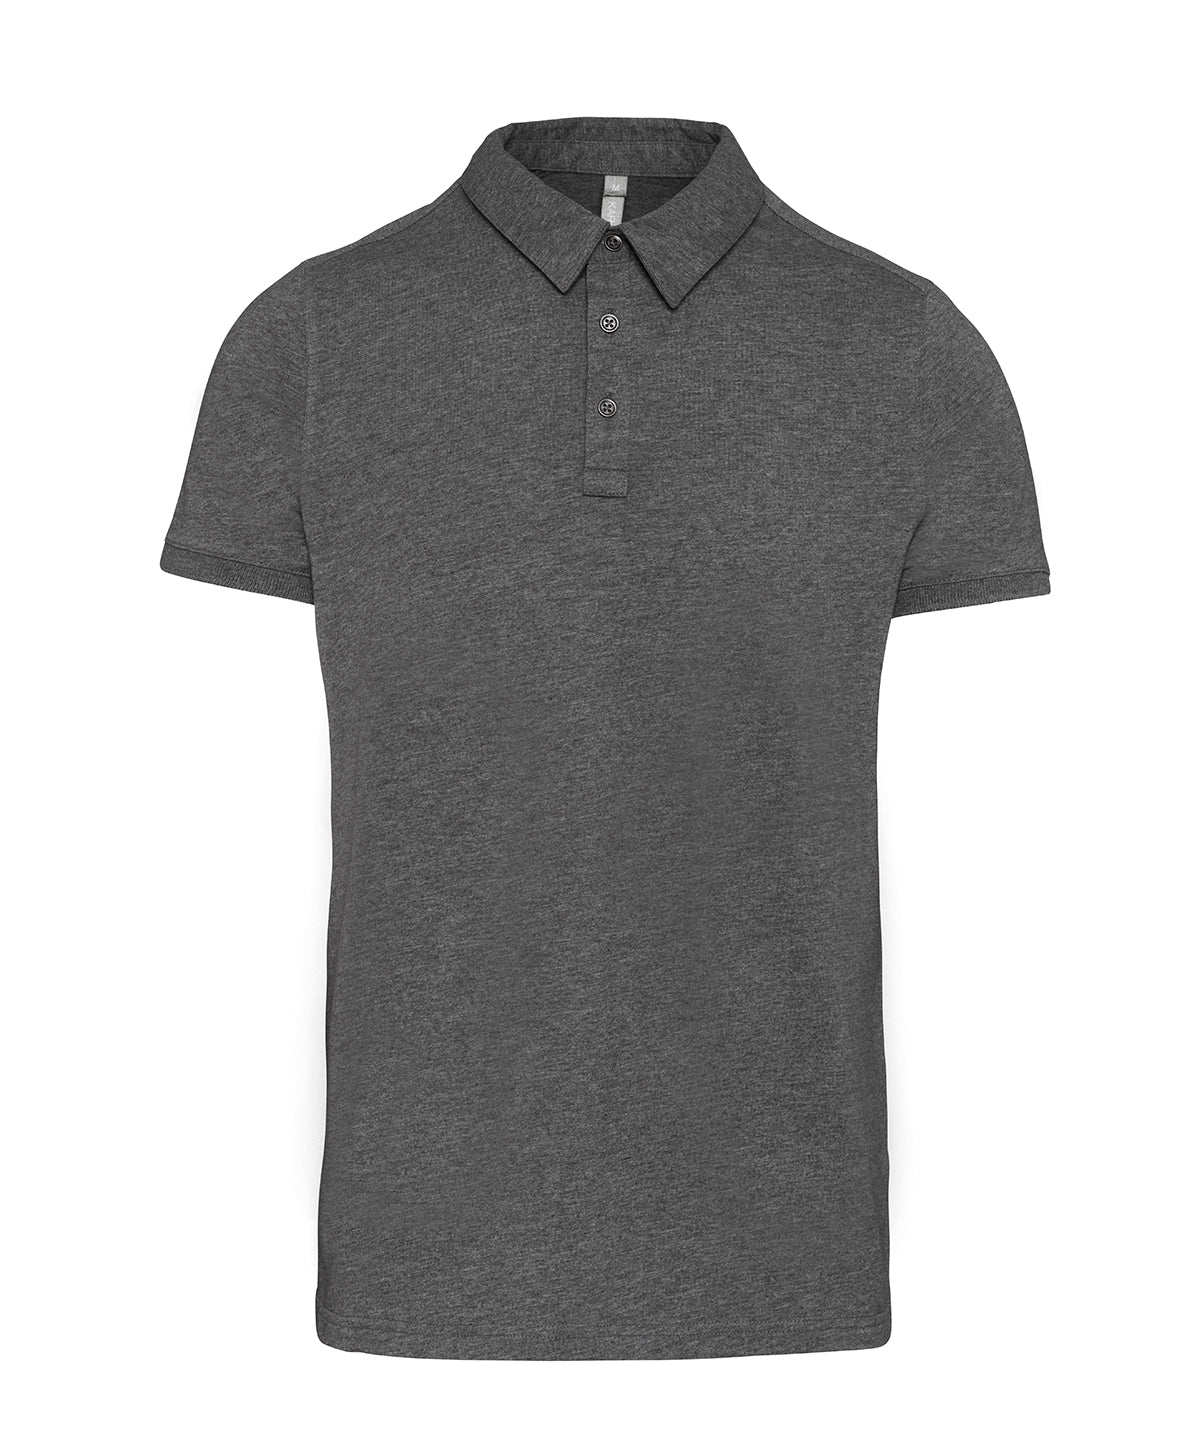 Personalised Polo Shirts - Black Kariban Jersey knit polo shirt